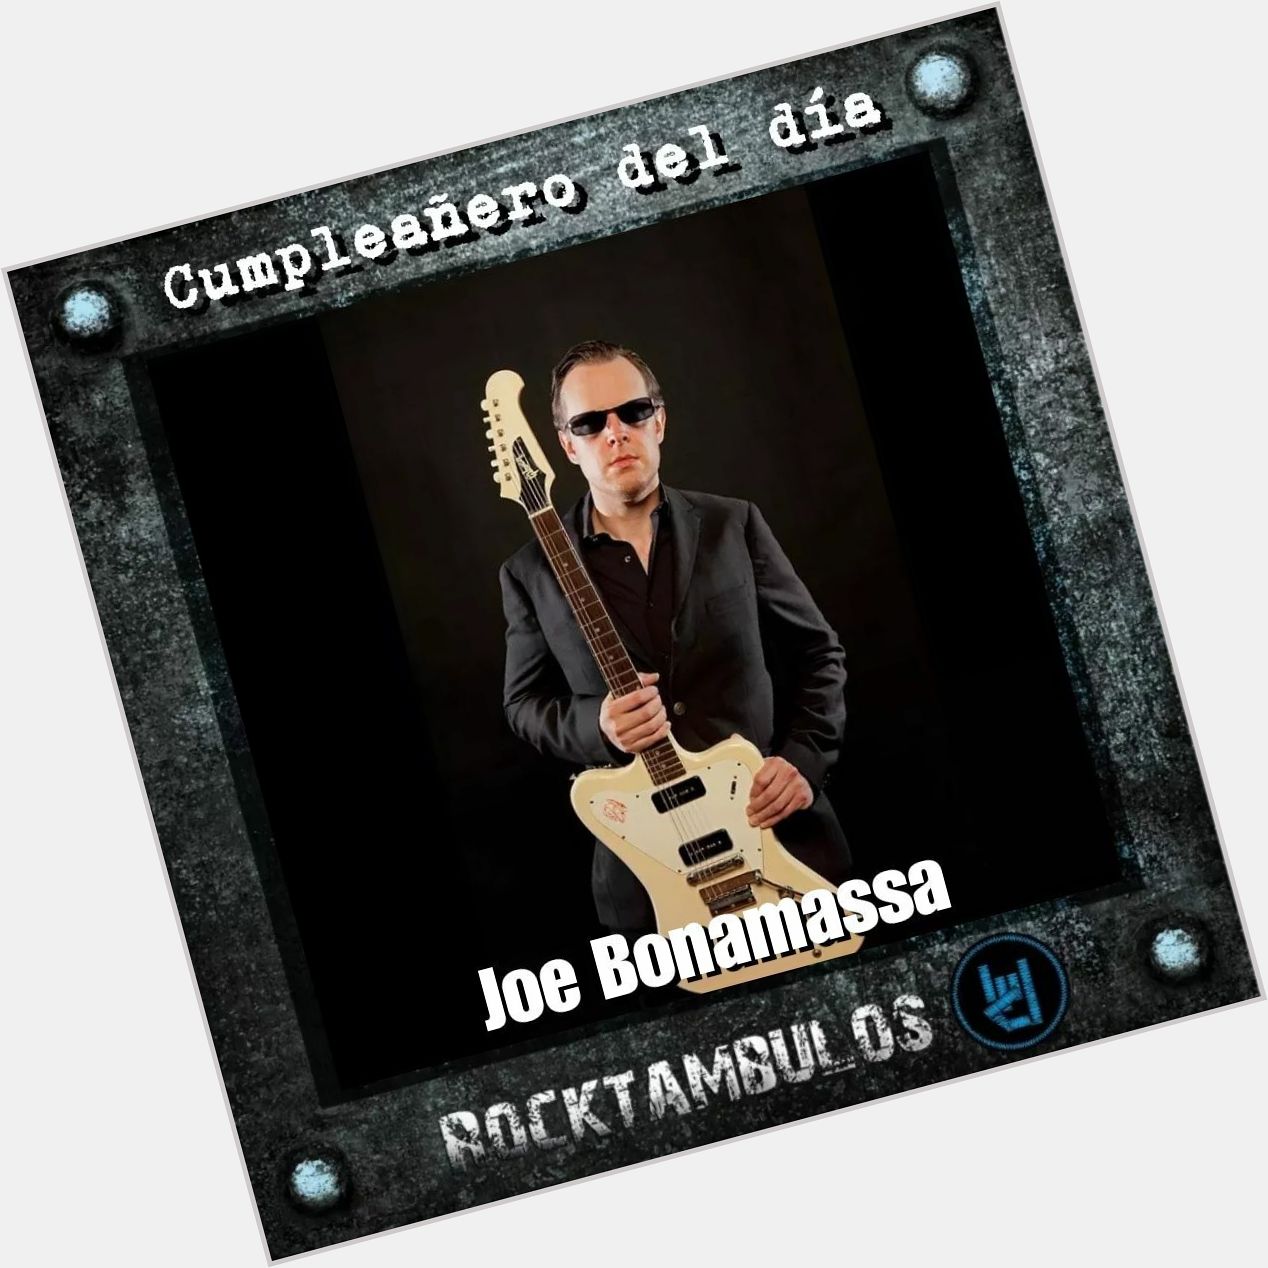 El talentoso Joe Bonamassa está cumpliendo 45 años el día de hoy Happy birthday Joe 